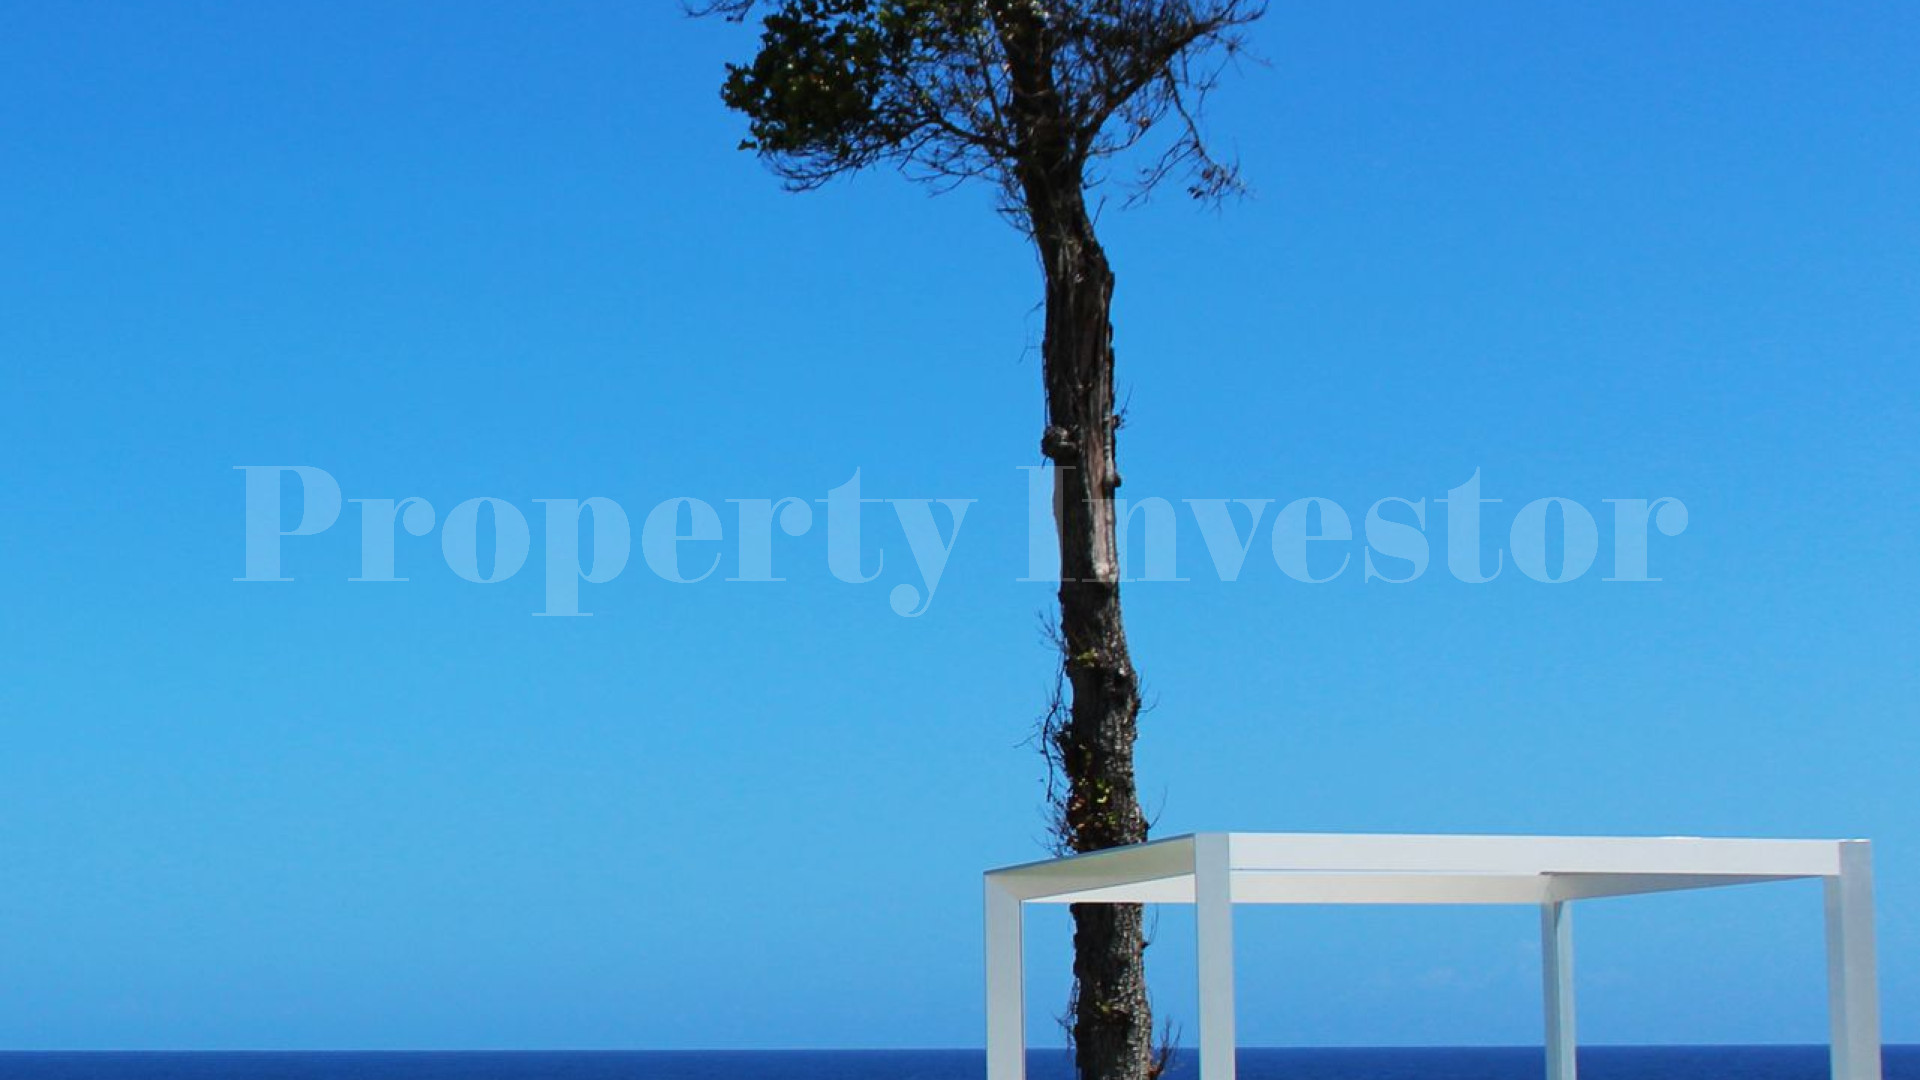 Участок в собственность в Доминиканской Республике с финансированием до 10 лет (Lot 46)